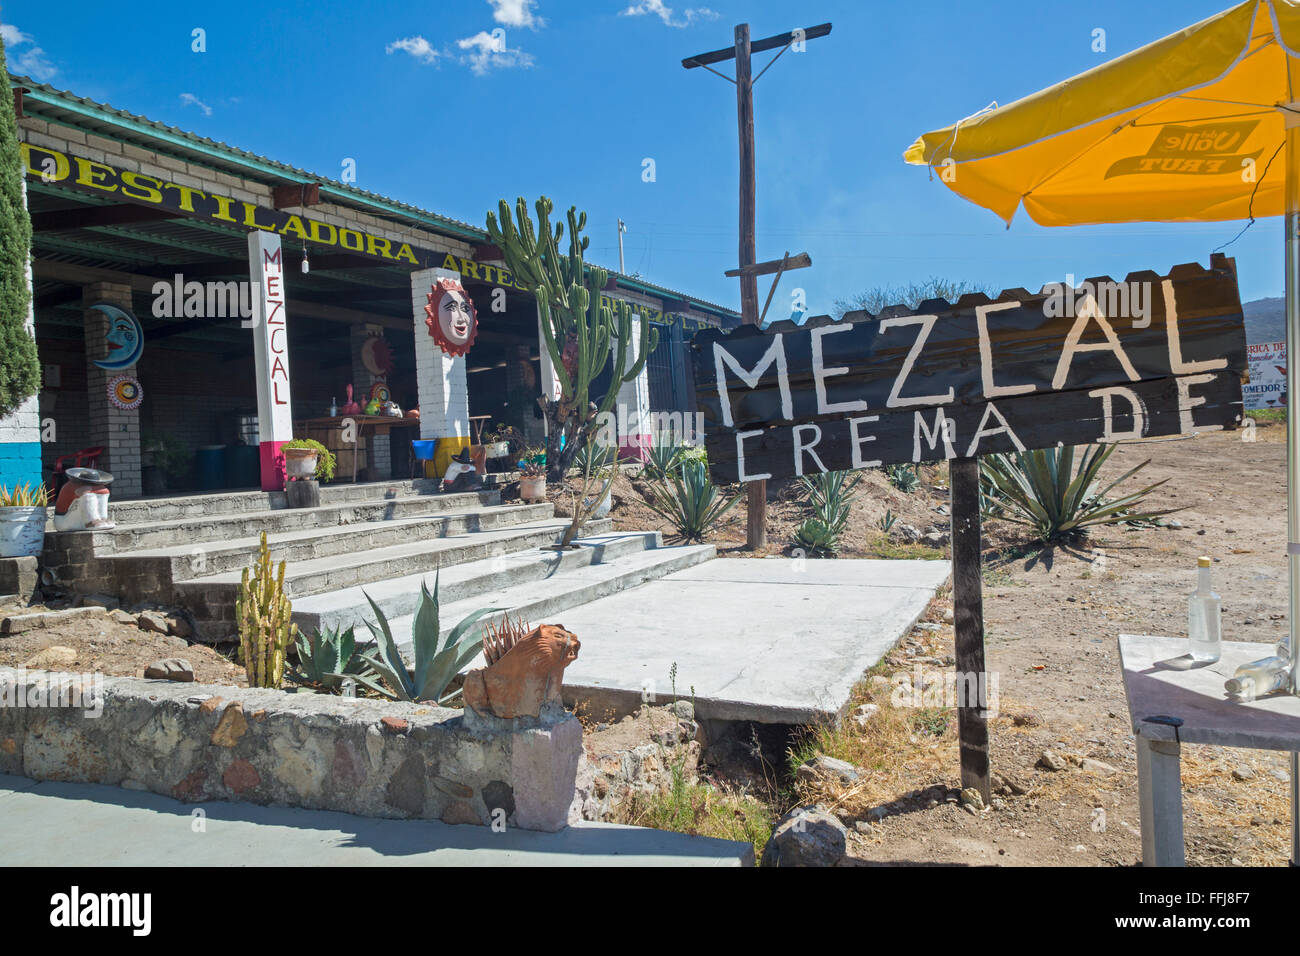 Santiago Matatlán, Oaxaca, Mexico - A mezcal distillery. Stock Photo